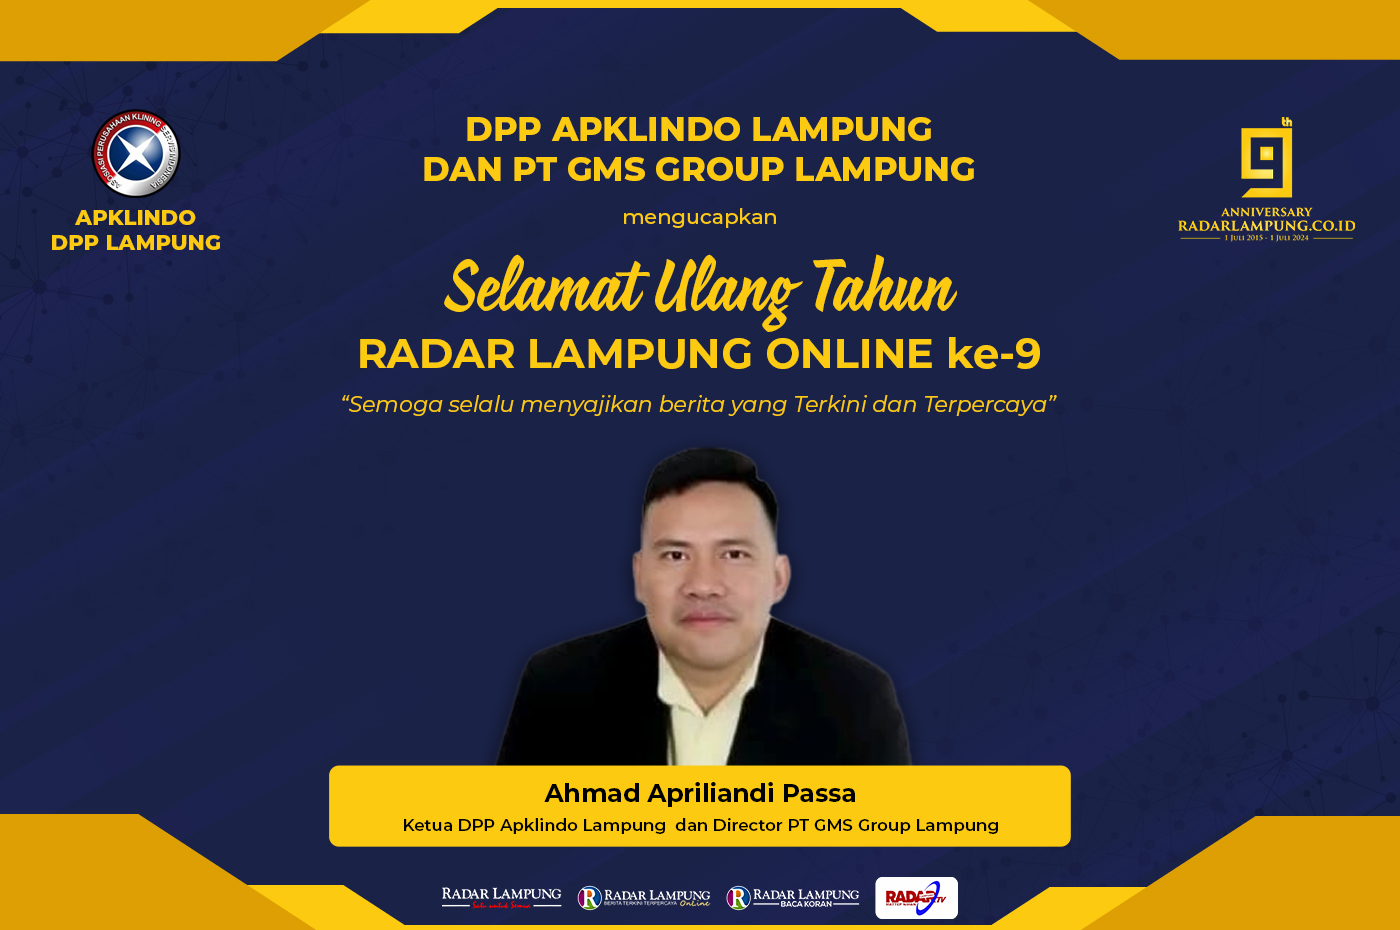 DPP APKLINDO Lampung dan PT GMS Group Lampung Mengucapkan Selamat Hari Jadi Radar Lampung Online ke-9